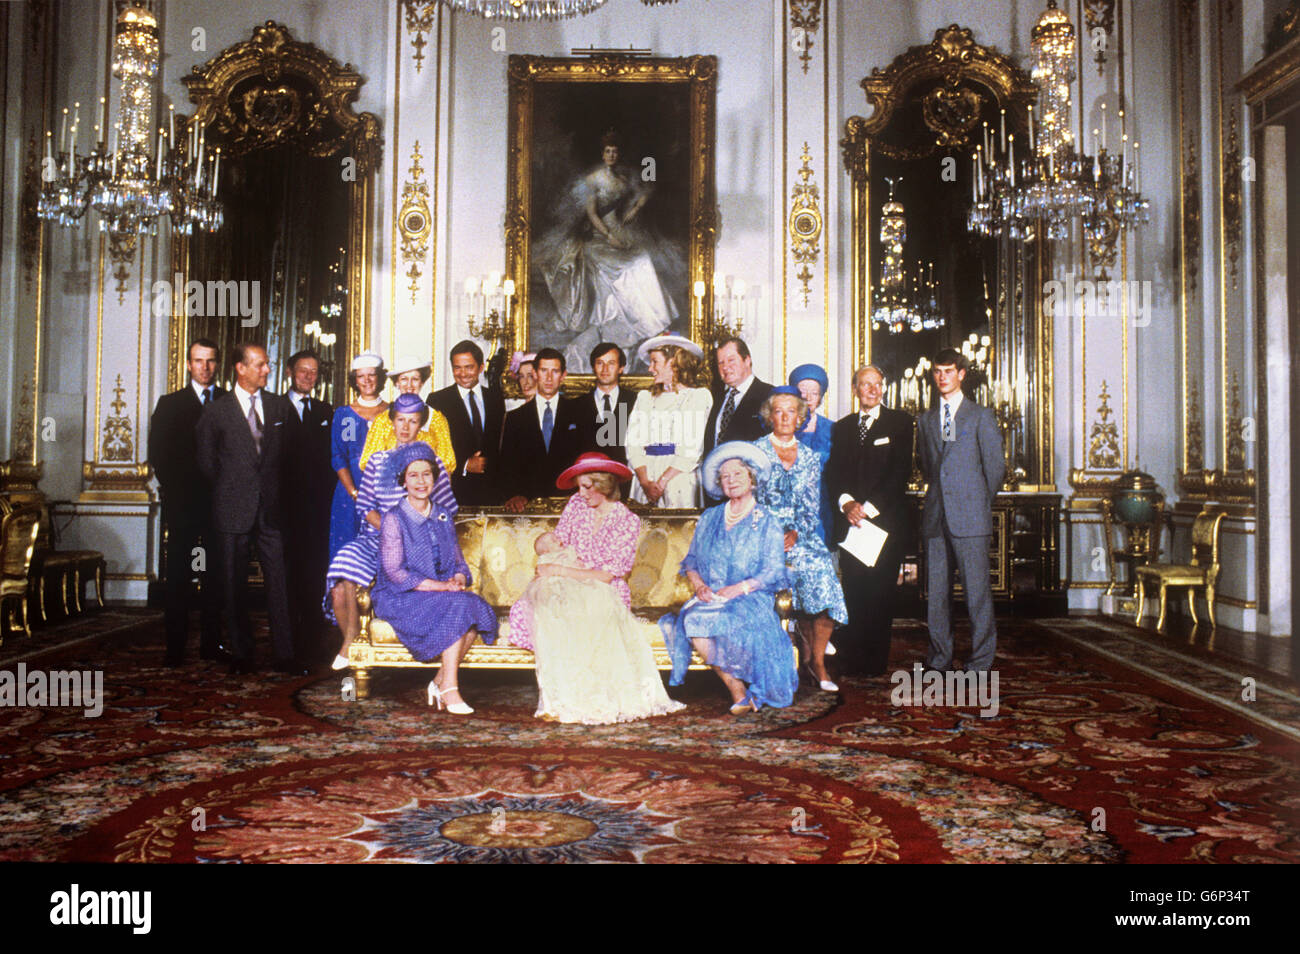 Le prince William a été baptisé au palais de Buckingham.Fils du prince Charles et de Diana, princesse de Galles, il est né le 21 1982 juin et est le deuxième à la succession du trône.Ses parrains sont Sir Laurens Van der Post, la princesse Alexandra, la duchesse de Westminster, l'ex-roi Constantine de Grèce, Lady Susan Hussey et Lord Romsey. Banque D'Images